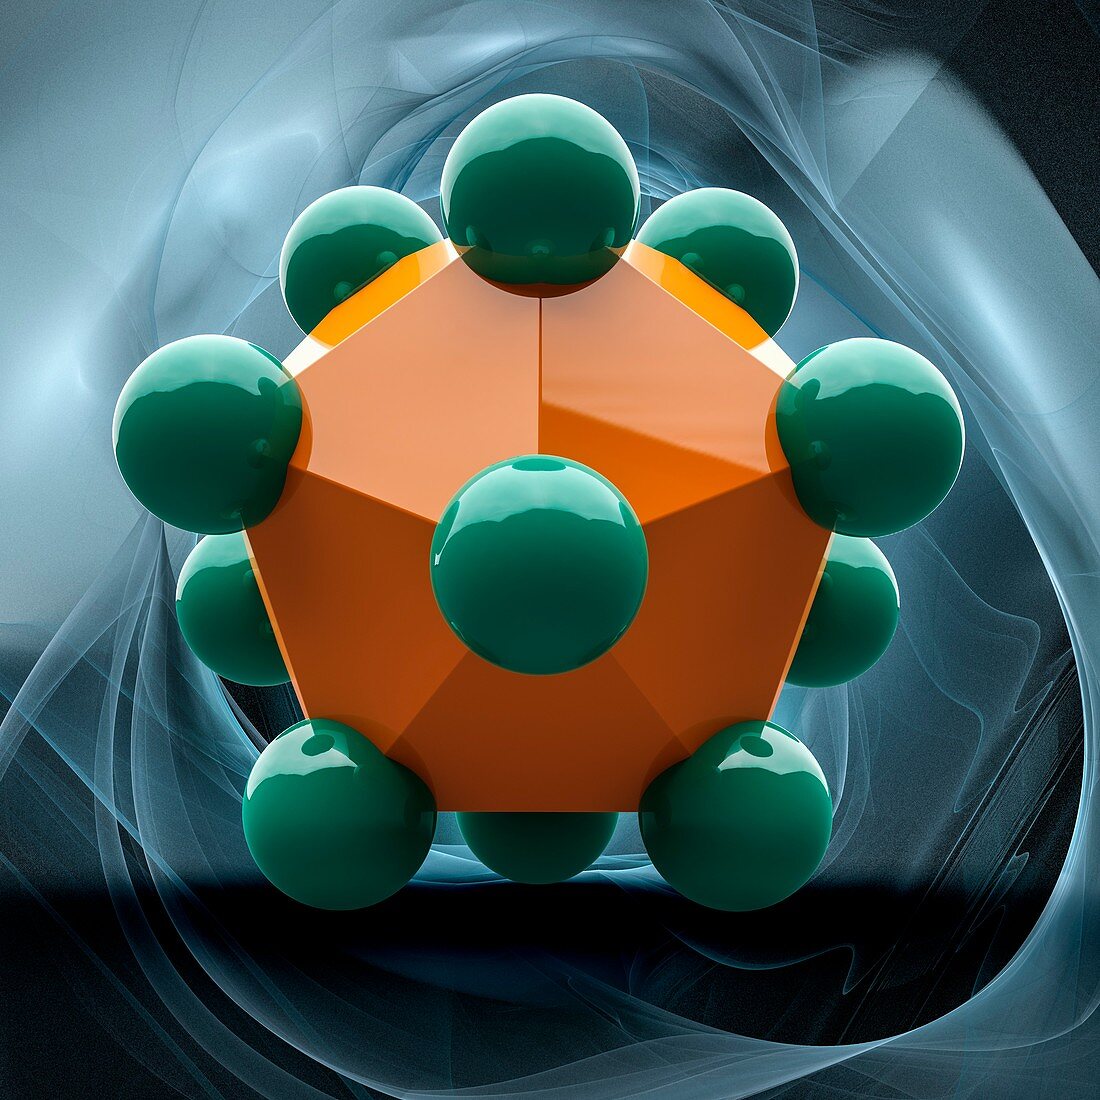 Virus capsid model, illustration